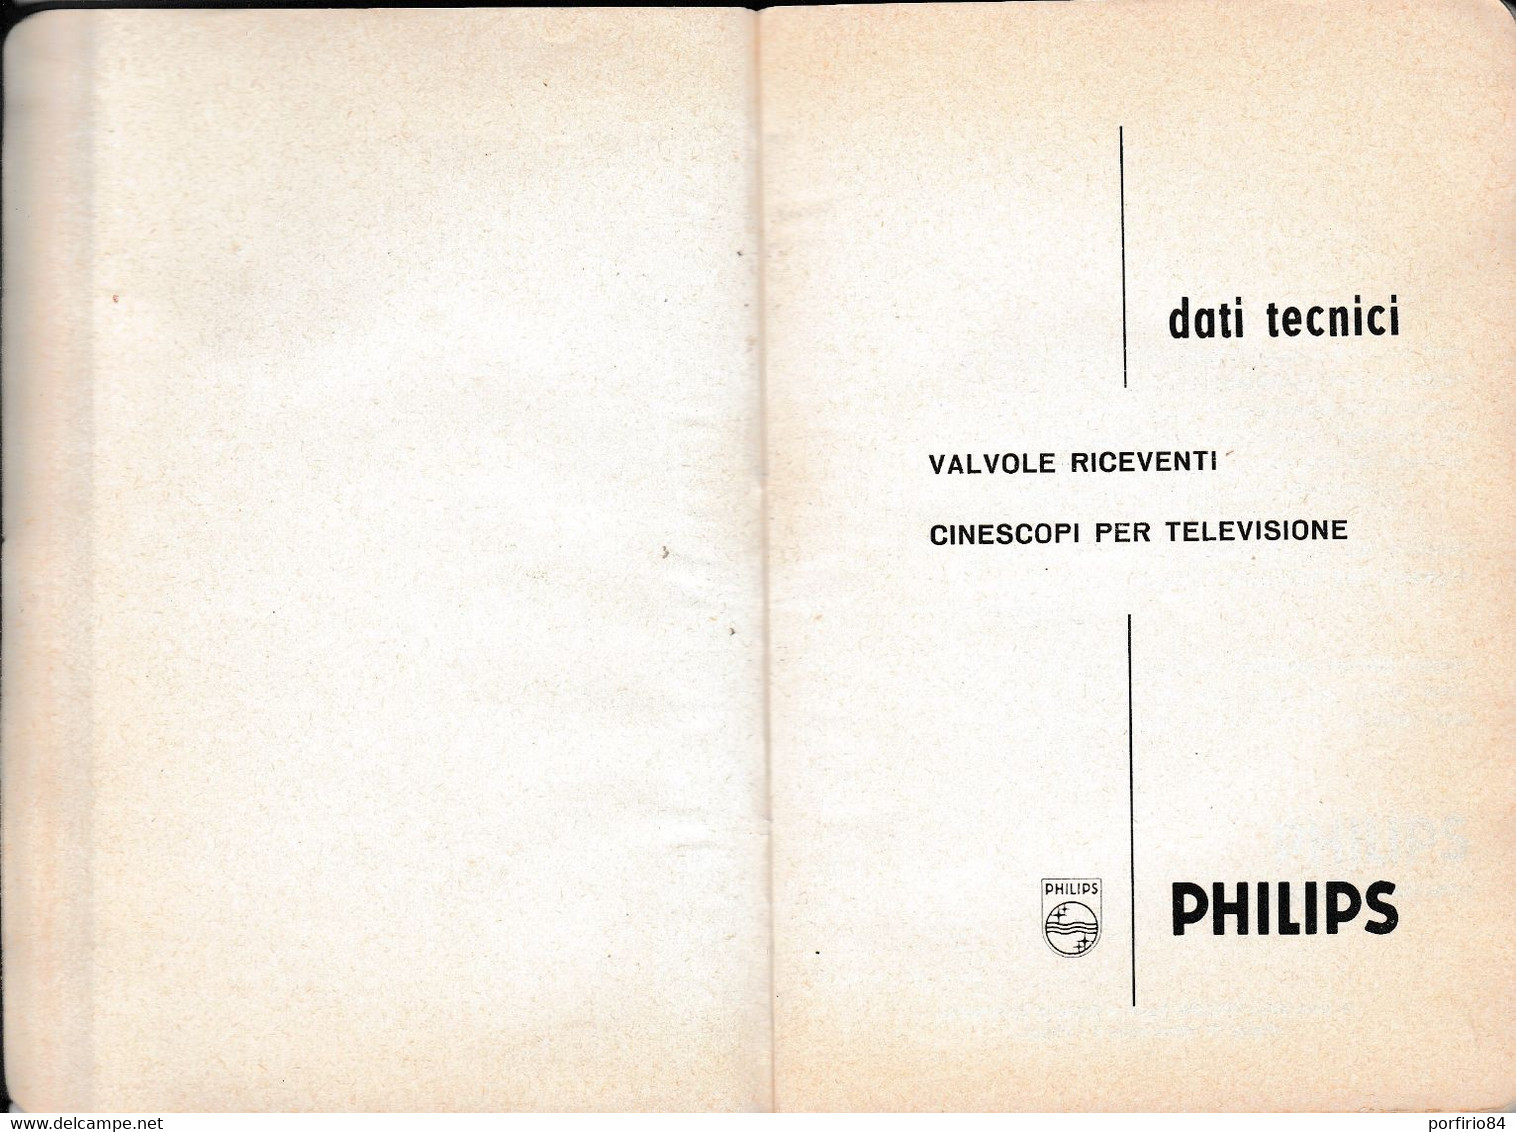 VALVOLE RICEVENTI CINESCOPI PER TELEVISIONE PHILIPS /DATI TECNICI_CATALOGO 1962 - Film Und Musik